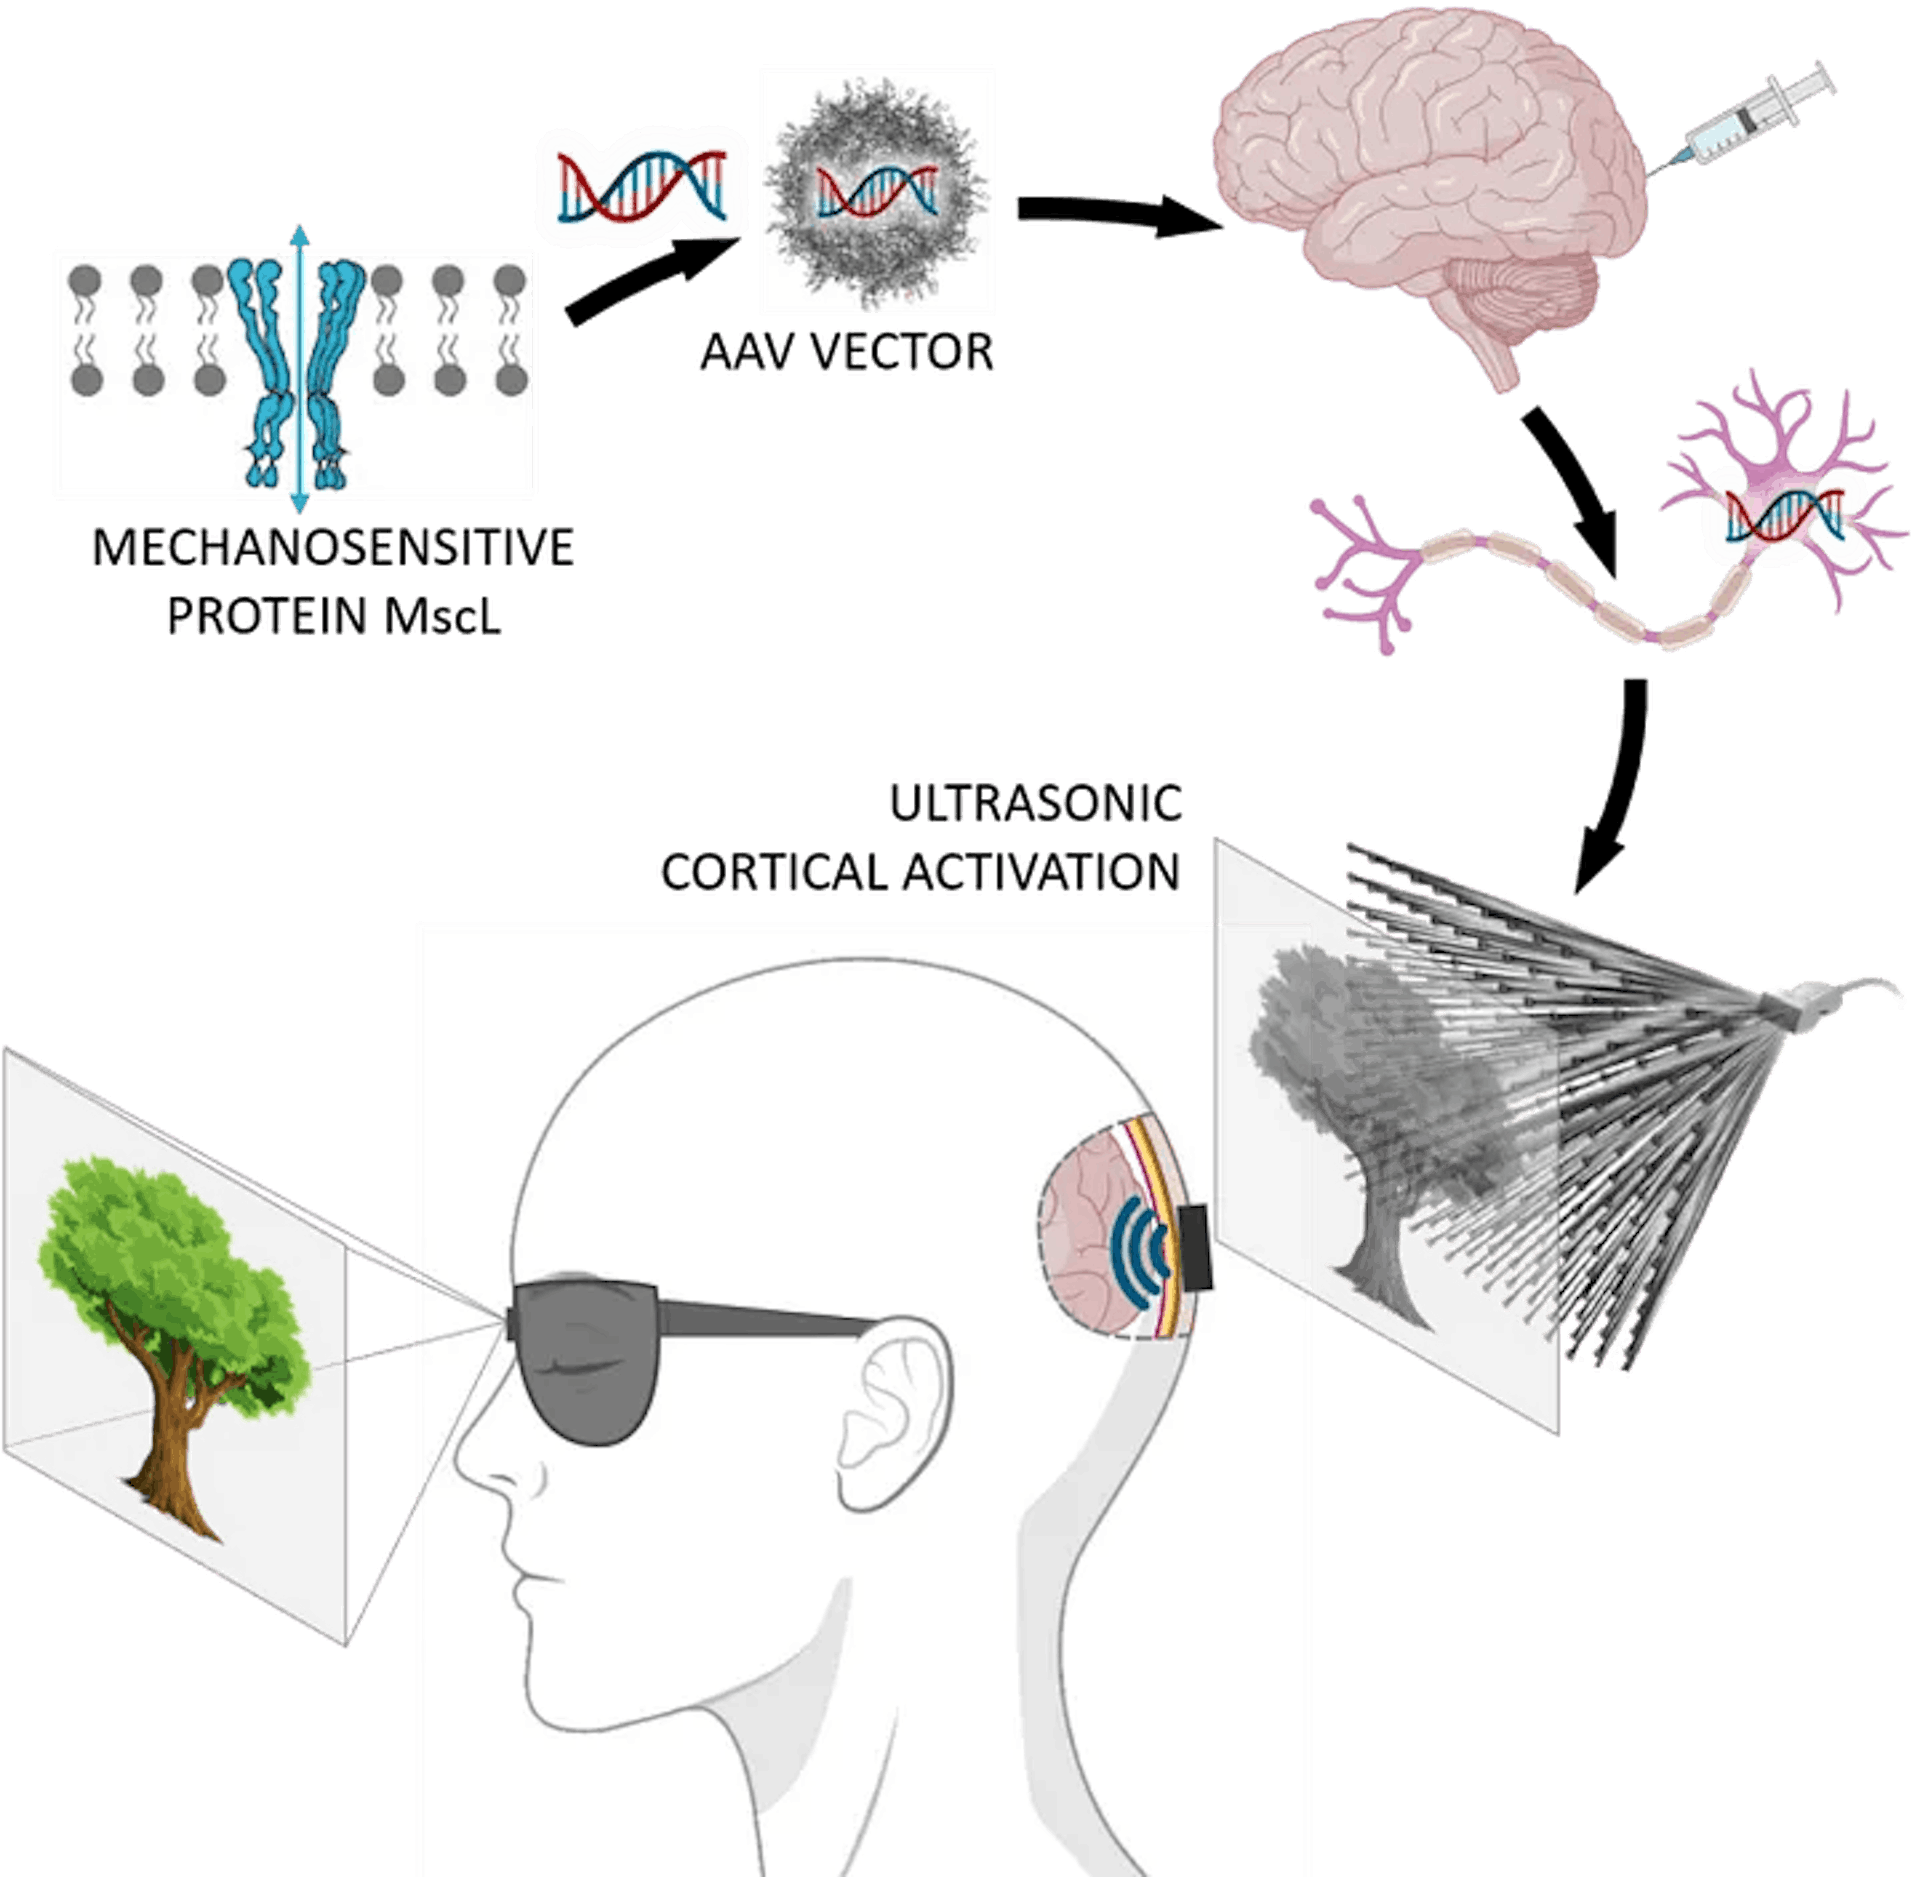 Las imágenes se pueden proyectar directamente al cerebro mediante ultrasonido para curar la ceguera, fuente: https://www.physicsformedicine.espci.fr/publication-in-nature-nanotechnology-towards-restoring-vision-using-ultrasound-sonogenetics